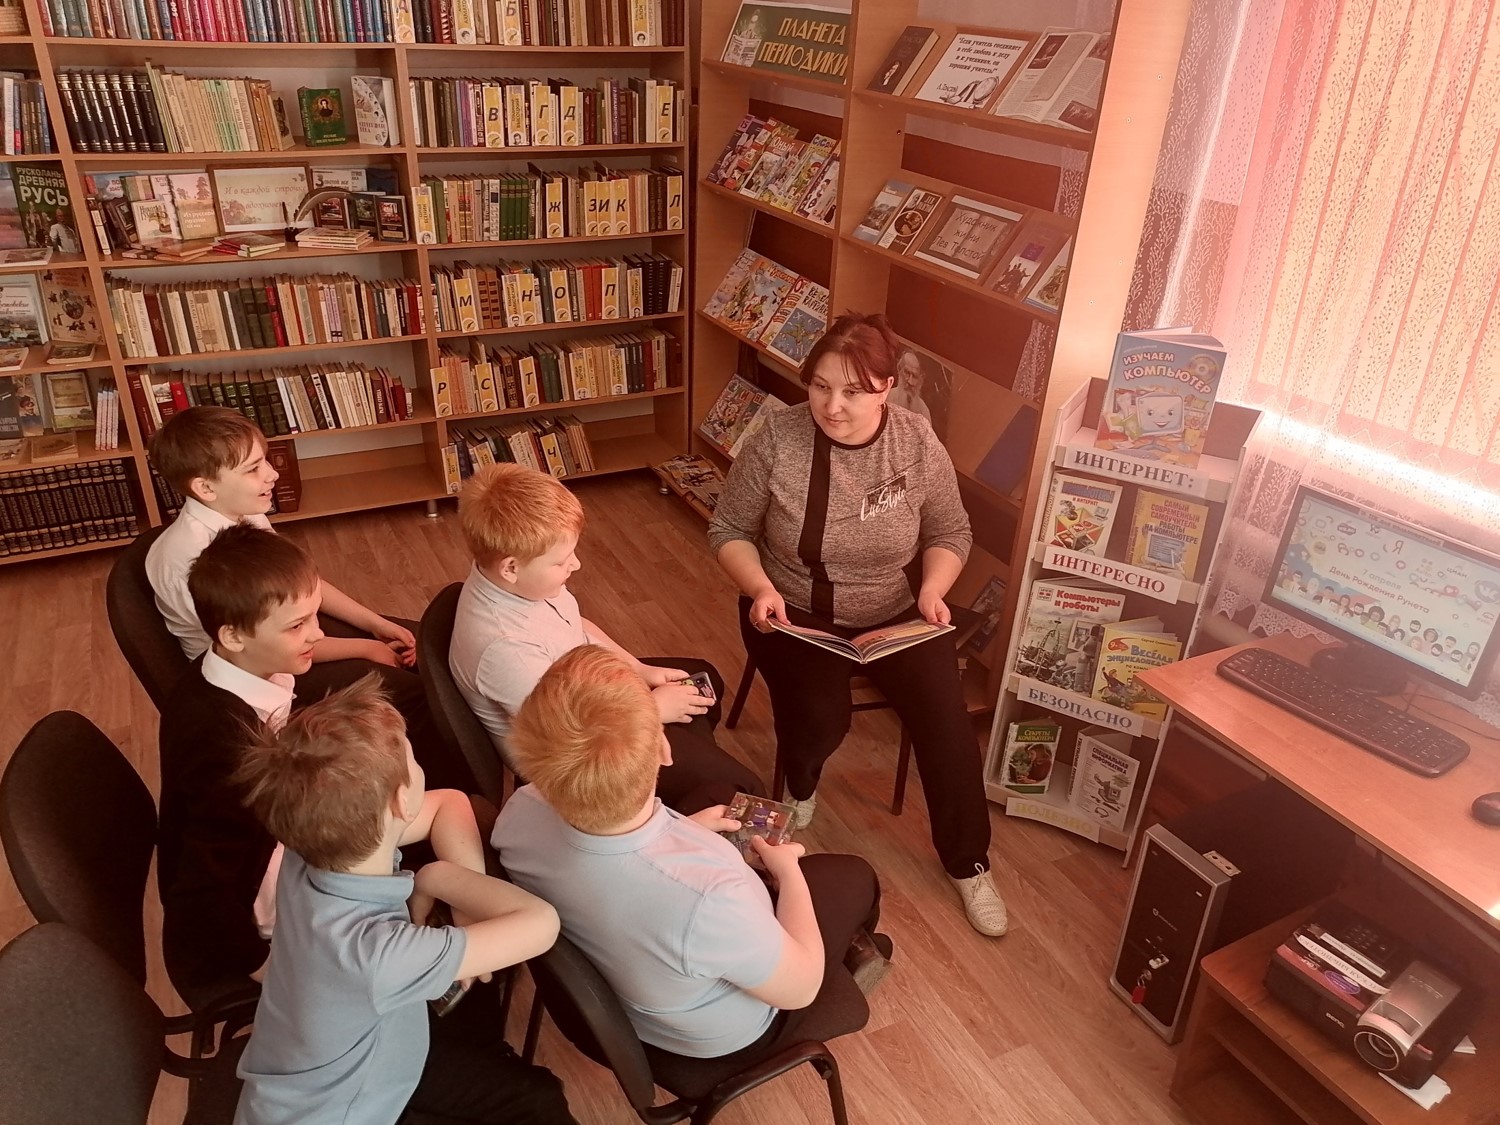 Интернет урок дети. Интересные идеи для библиотеки и библиотекаря. Фотосессия в библиотеке дети. Уроки детского этикета.